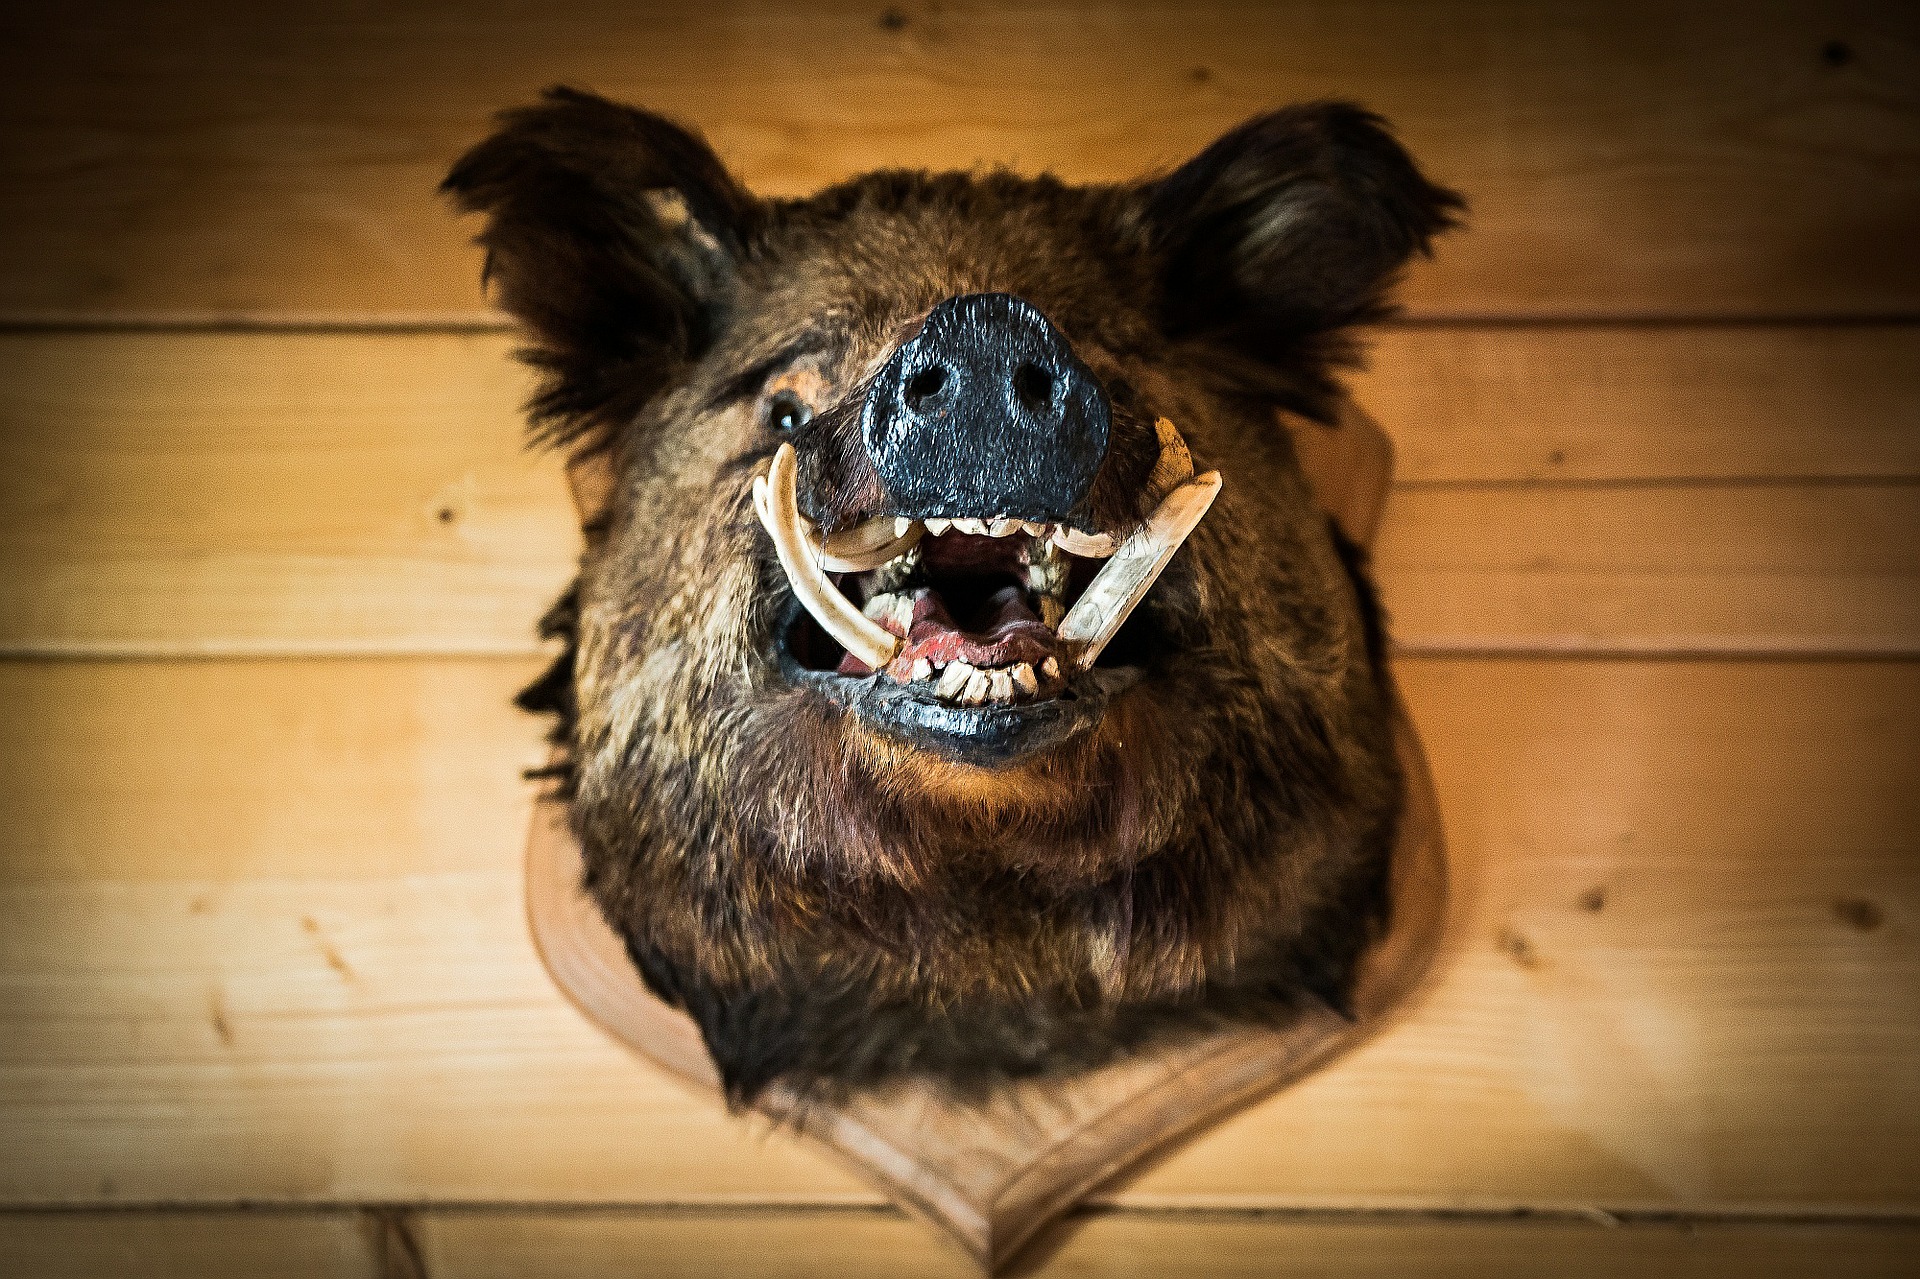 A stuffed boar head mounted on a wall